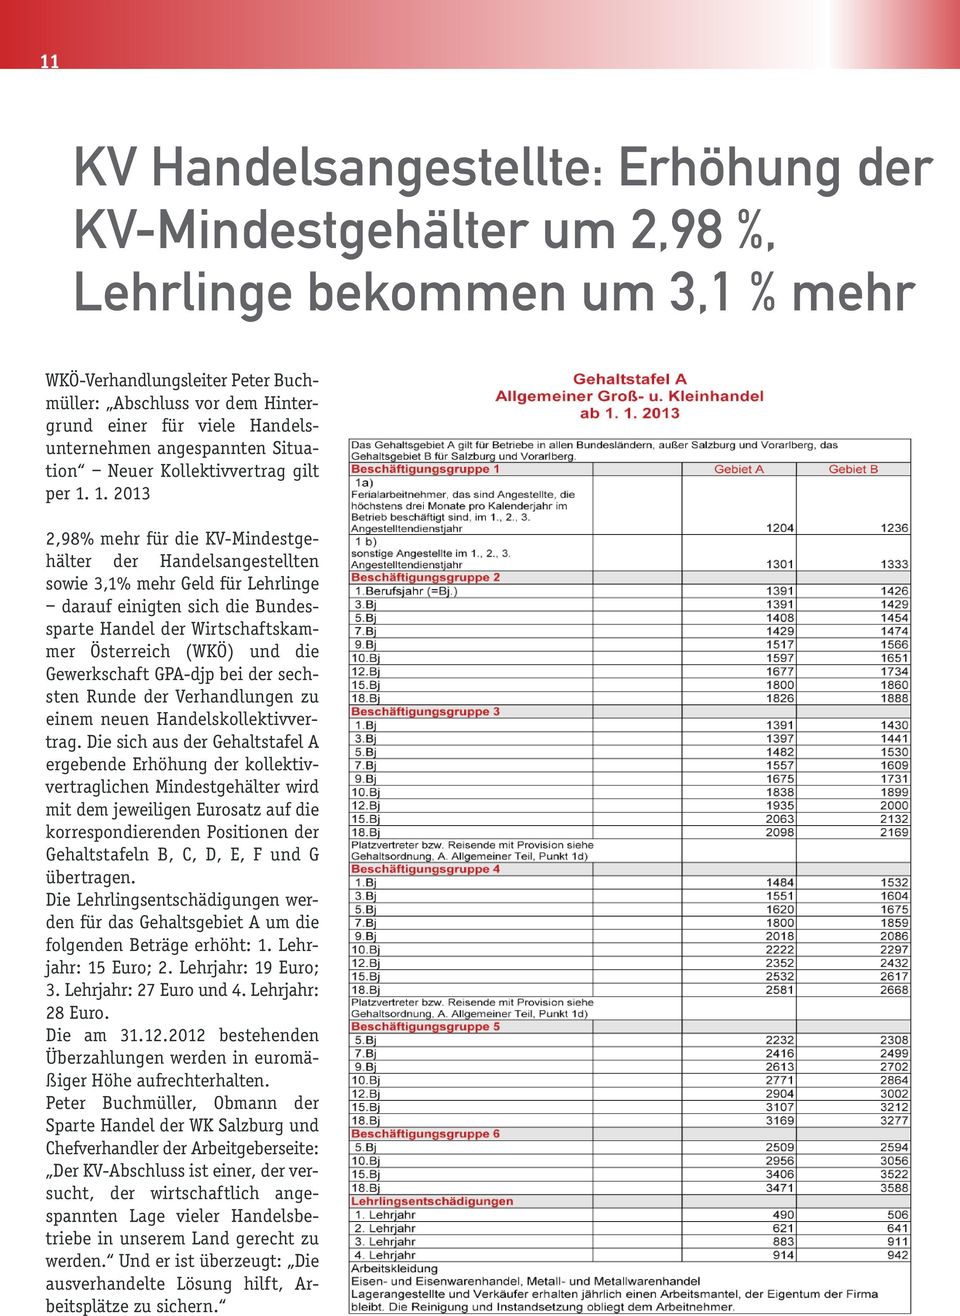 1. 2013 2,98% mehr für die KV-Mindestgehälter der Handelsangestellten sowie 3,1% mehr Geld für Lehrlinge darauf einigten sich die Bundessparte Handel der Wirtschaftskammer Österreich (WKÖ) und die